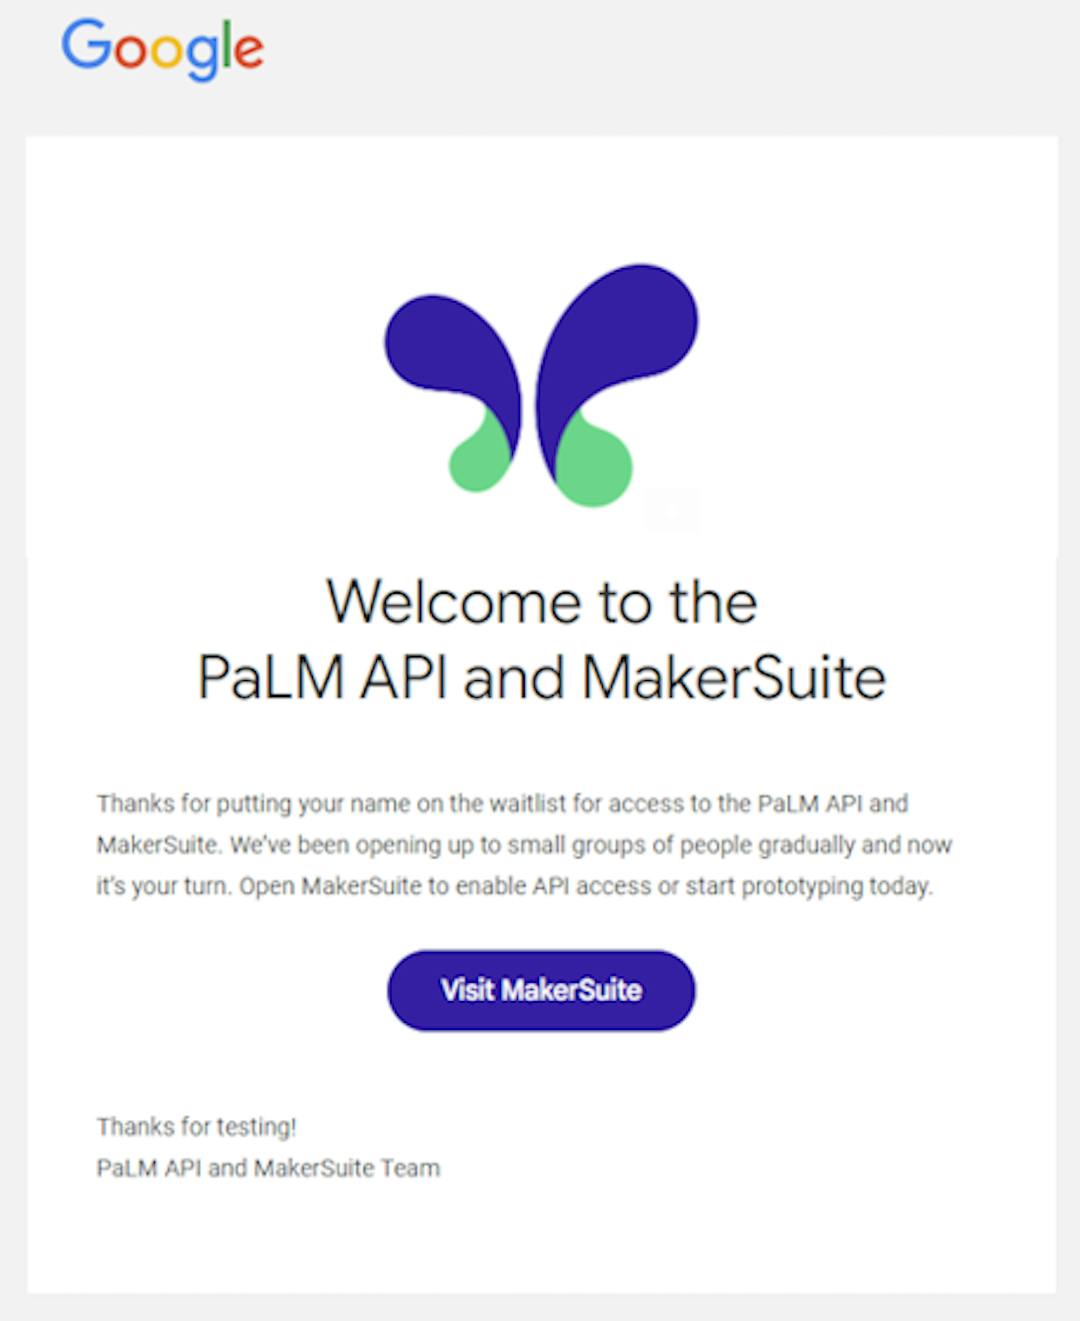 Willkommens-E-Mail von Google bezüglich des Zugriffs auf PaLM API und MakerSuite